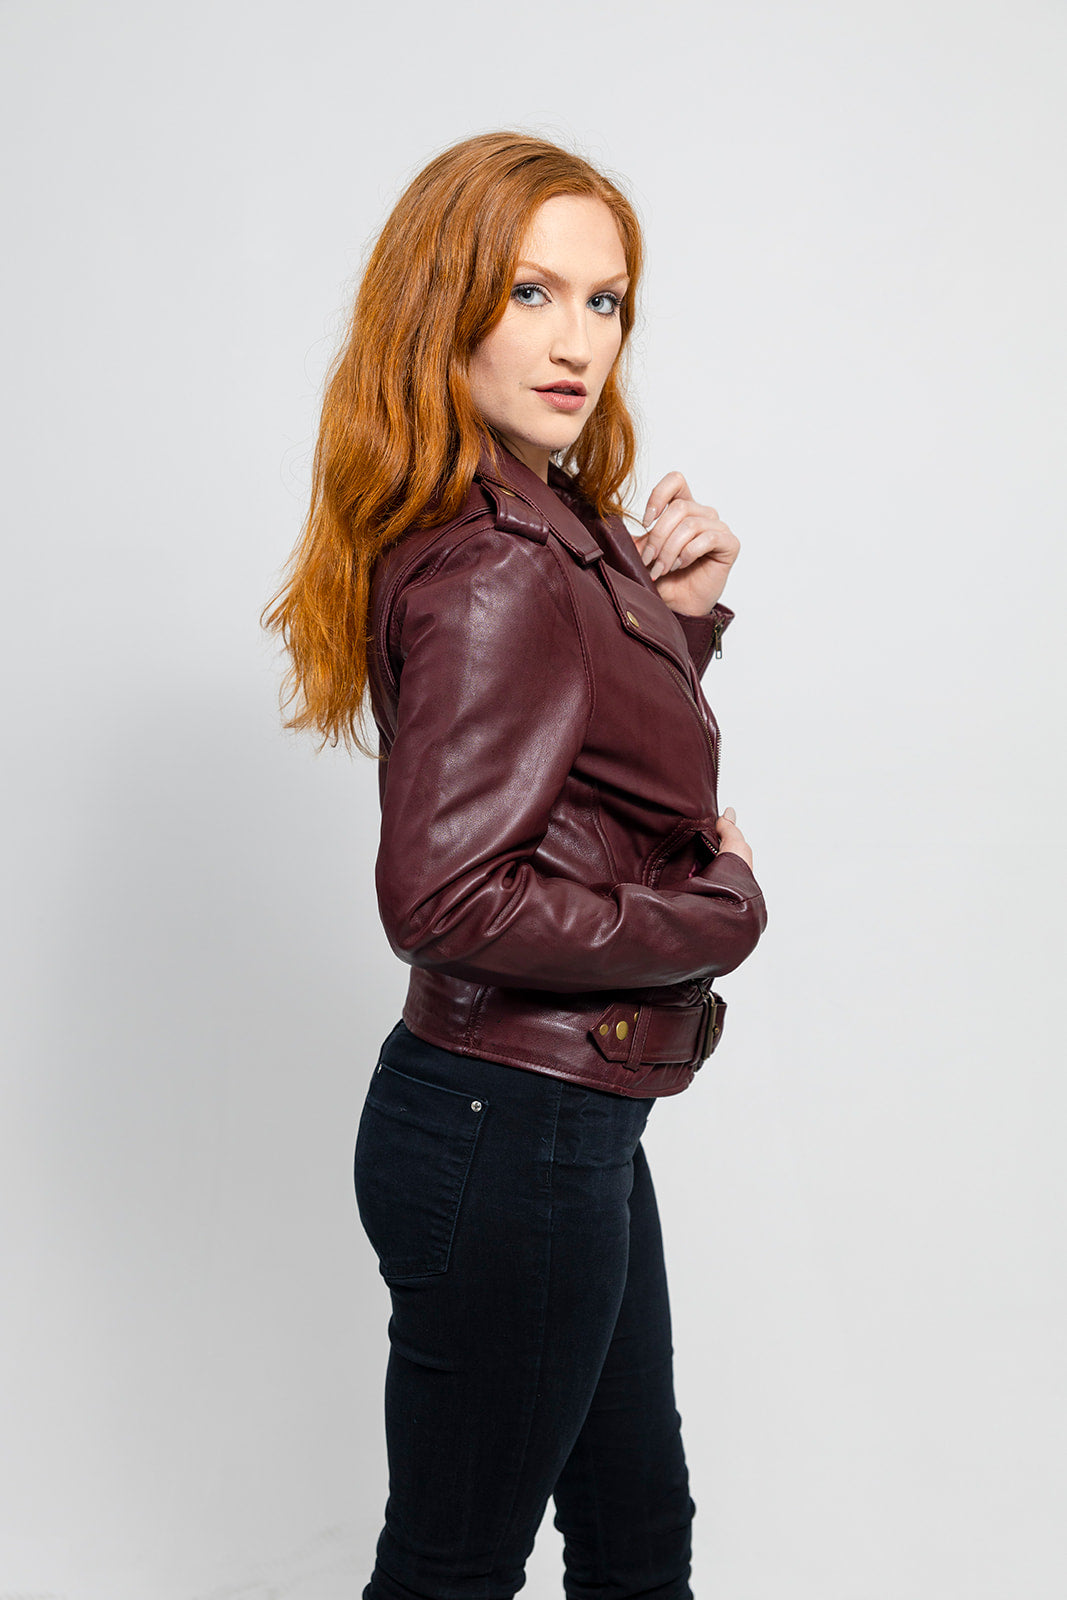 Rebel - Women's Fashion Lambskin Leather Jacket (Oxblood) – First